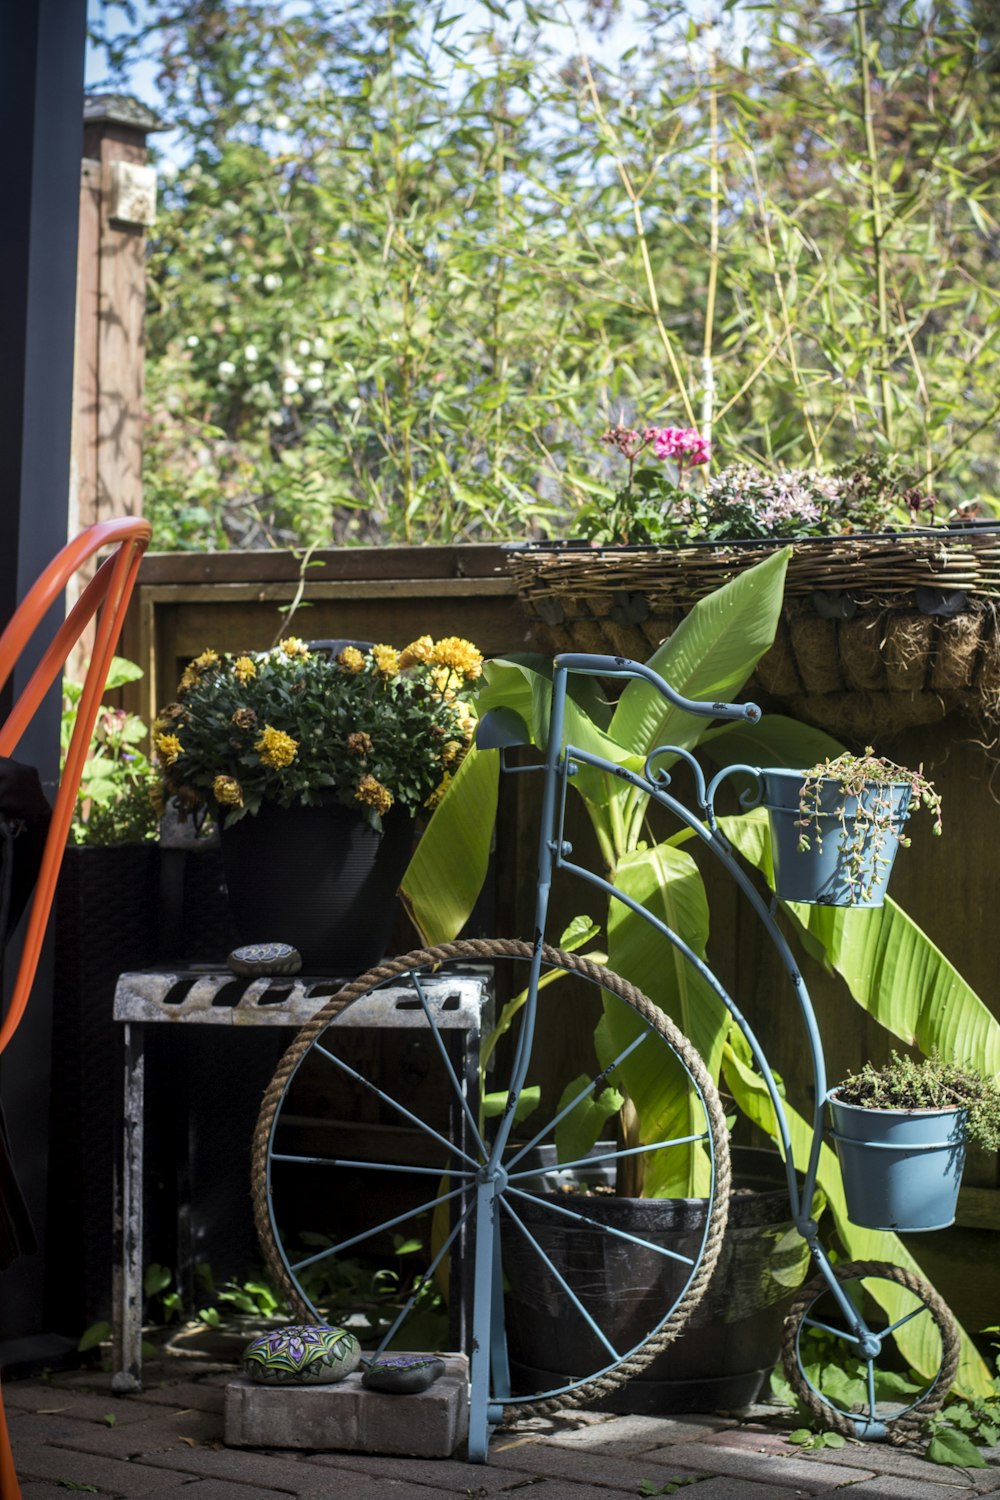 una bicicleta estacionada junto a una planta en maceta